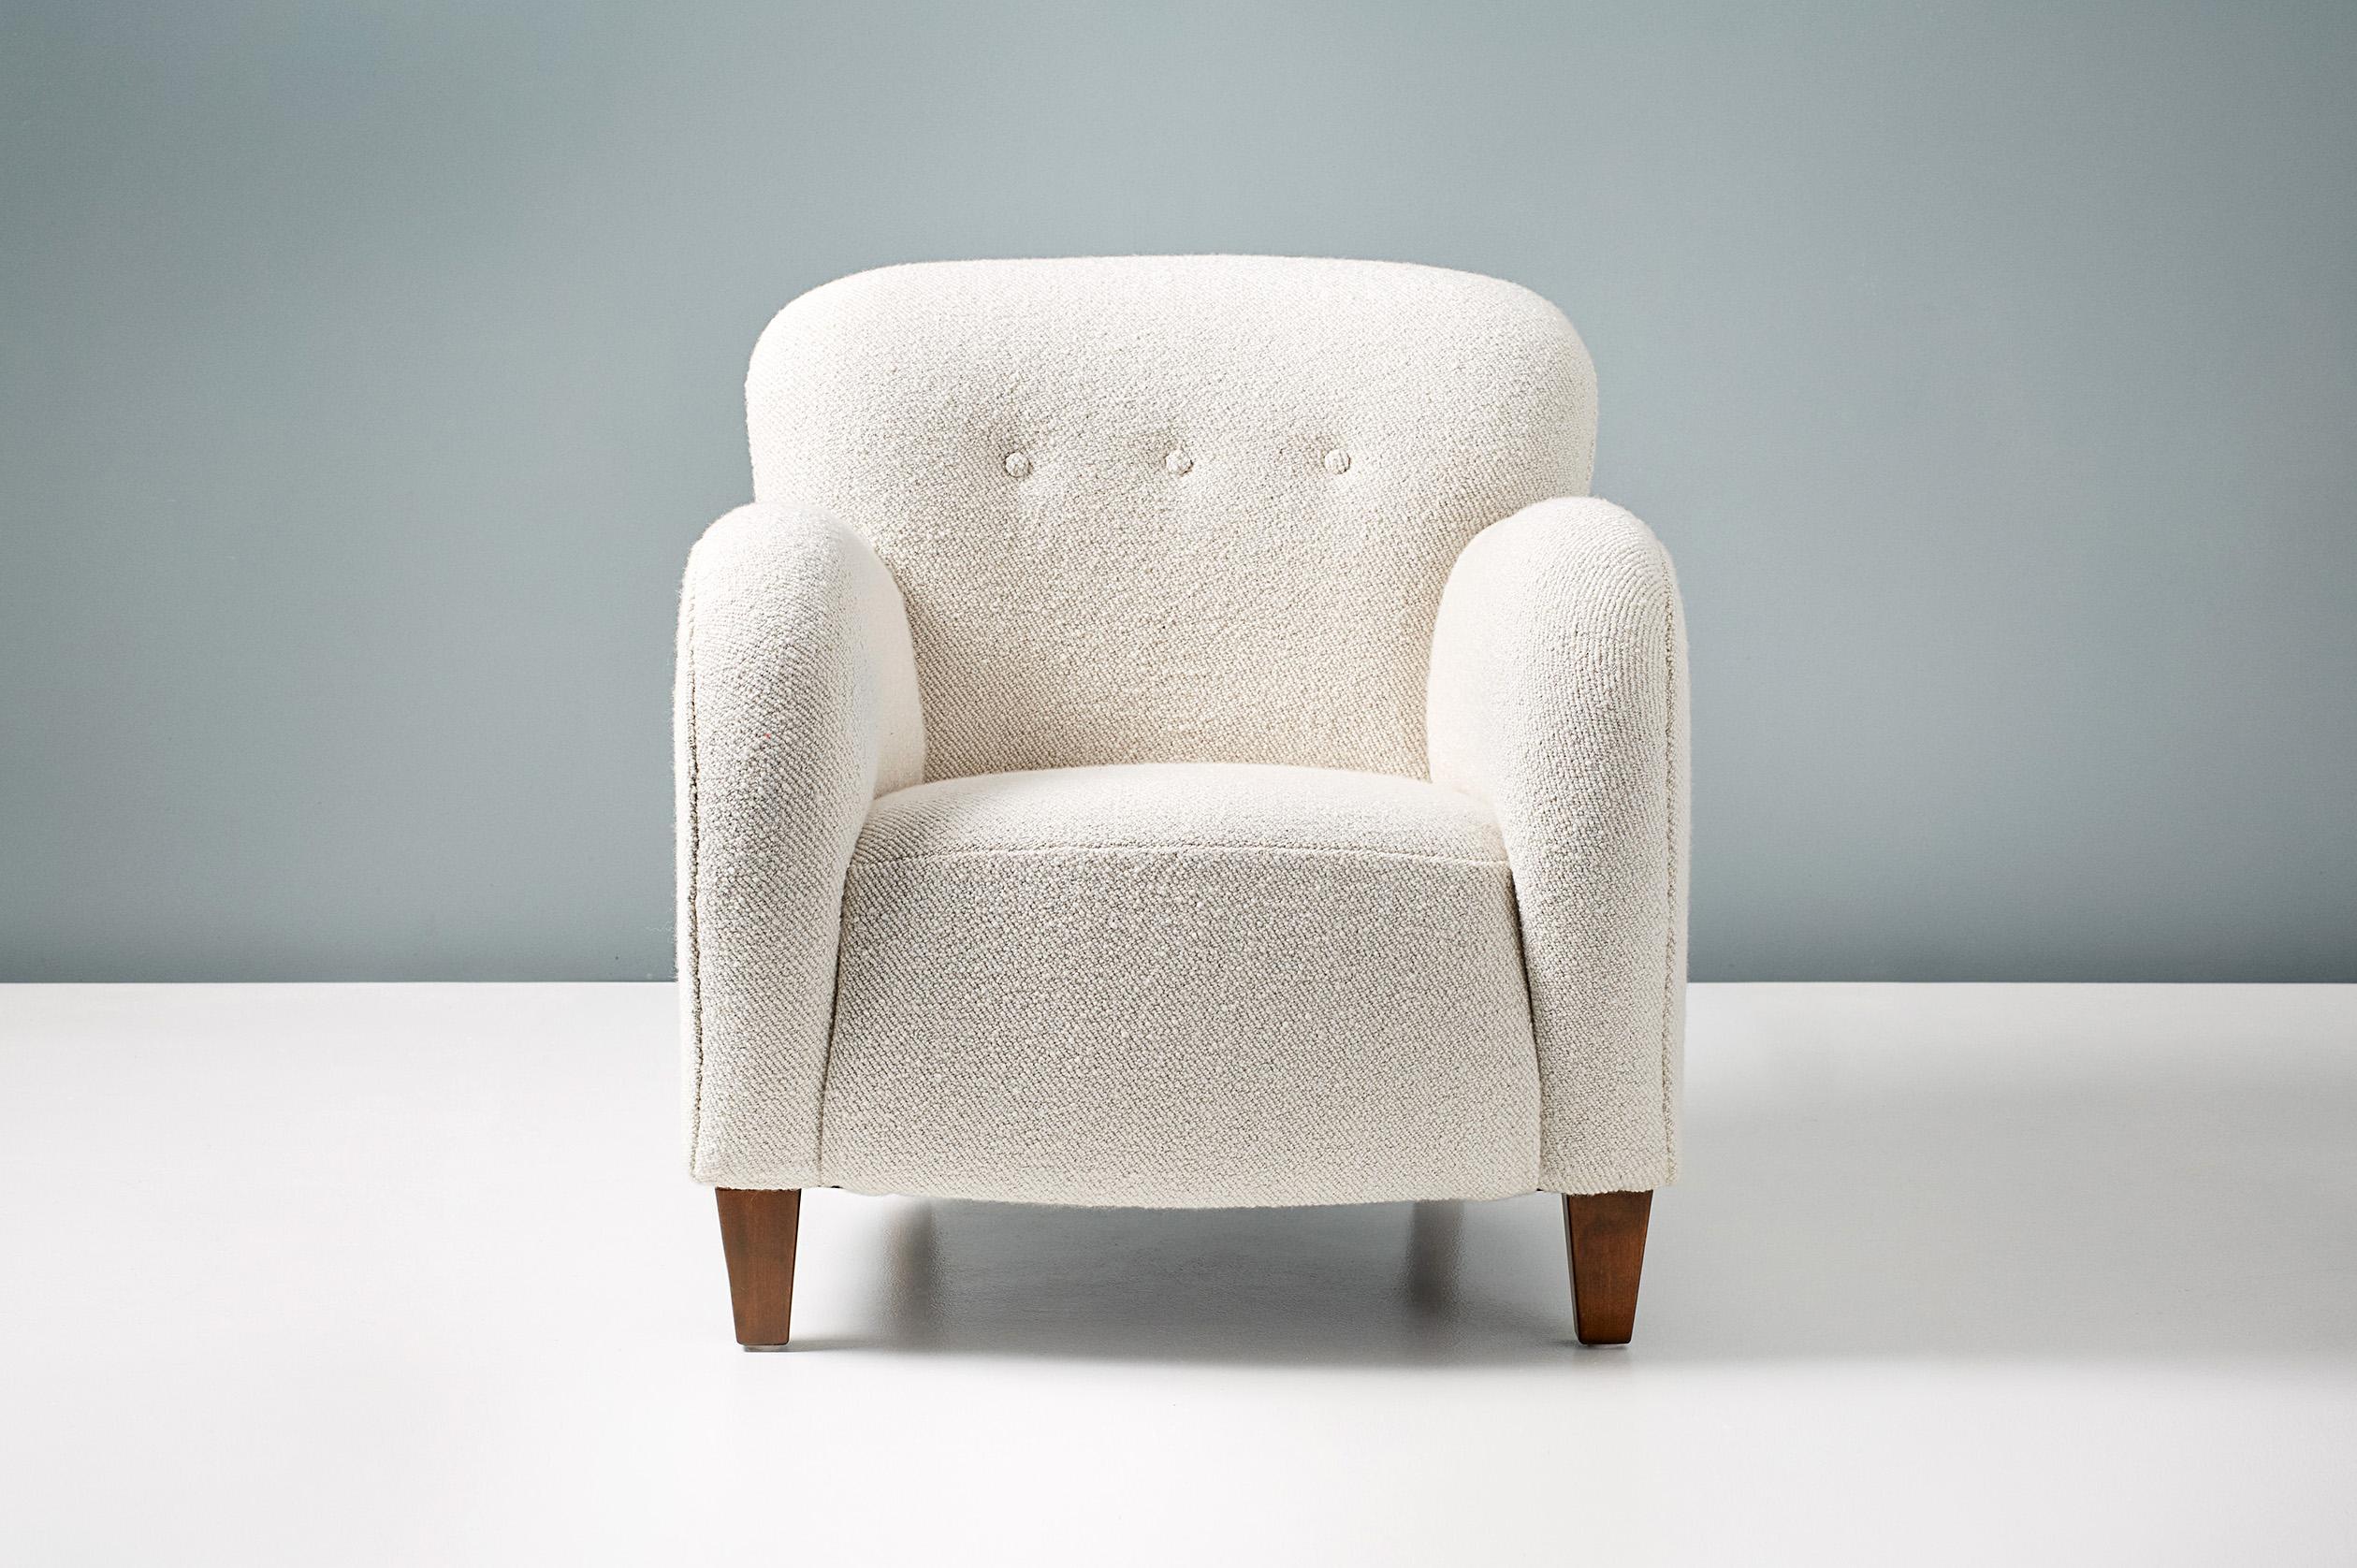 Chaise longue d'ébéniste danois, vers les années 1950.

Fauteuil à la manière de Flemming Lassen, produit au Danemark par un designer anonyme. Pieds en hêtre teinté avec un nouveau revêtement en tissu bouclé en laine mélangée de Dedar